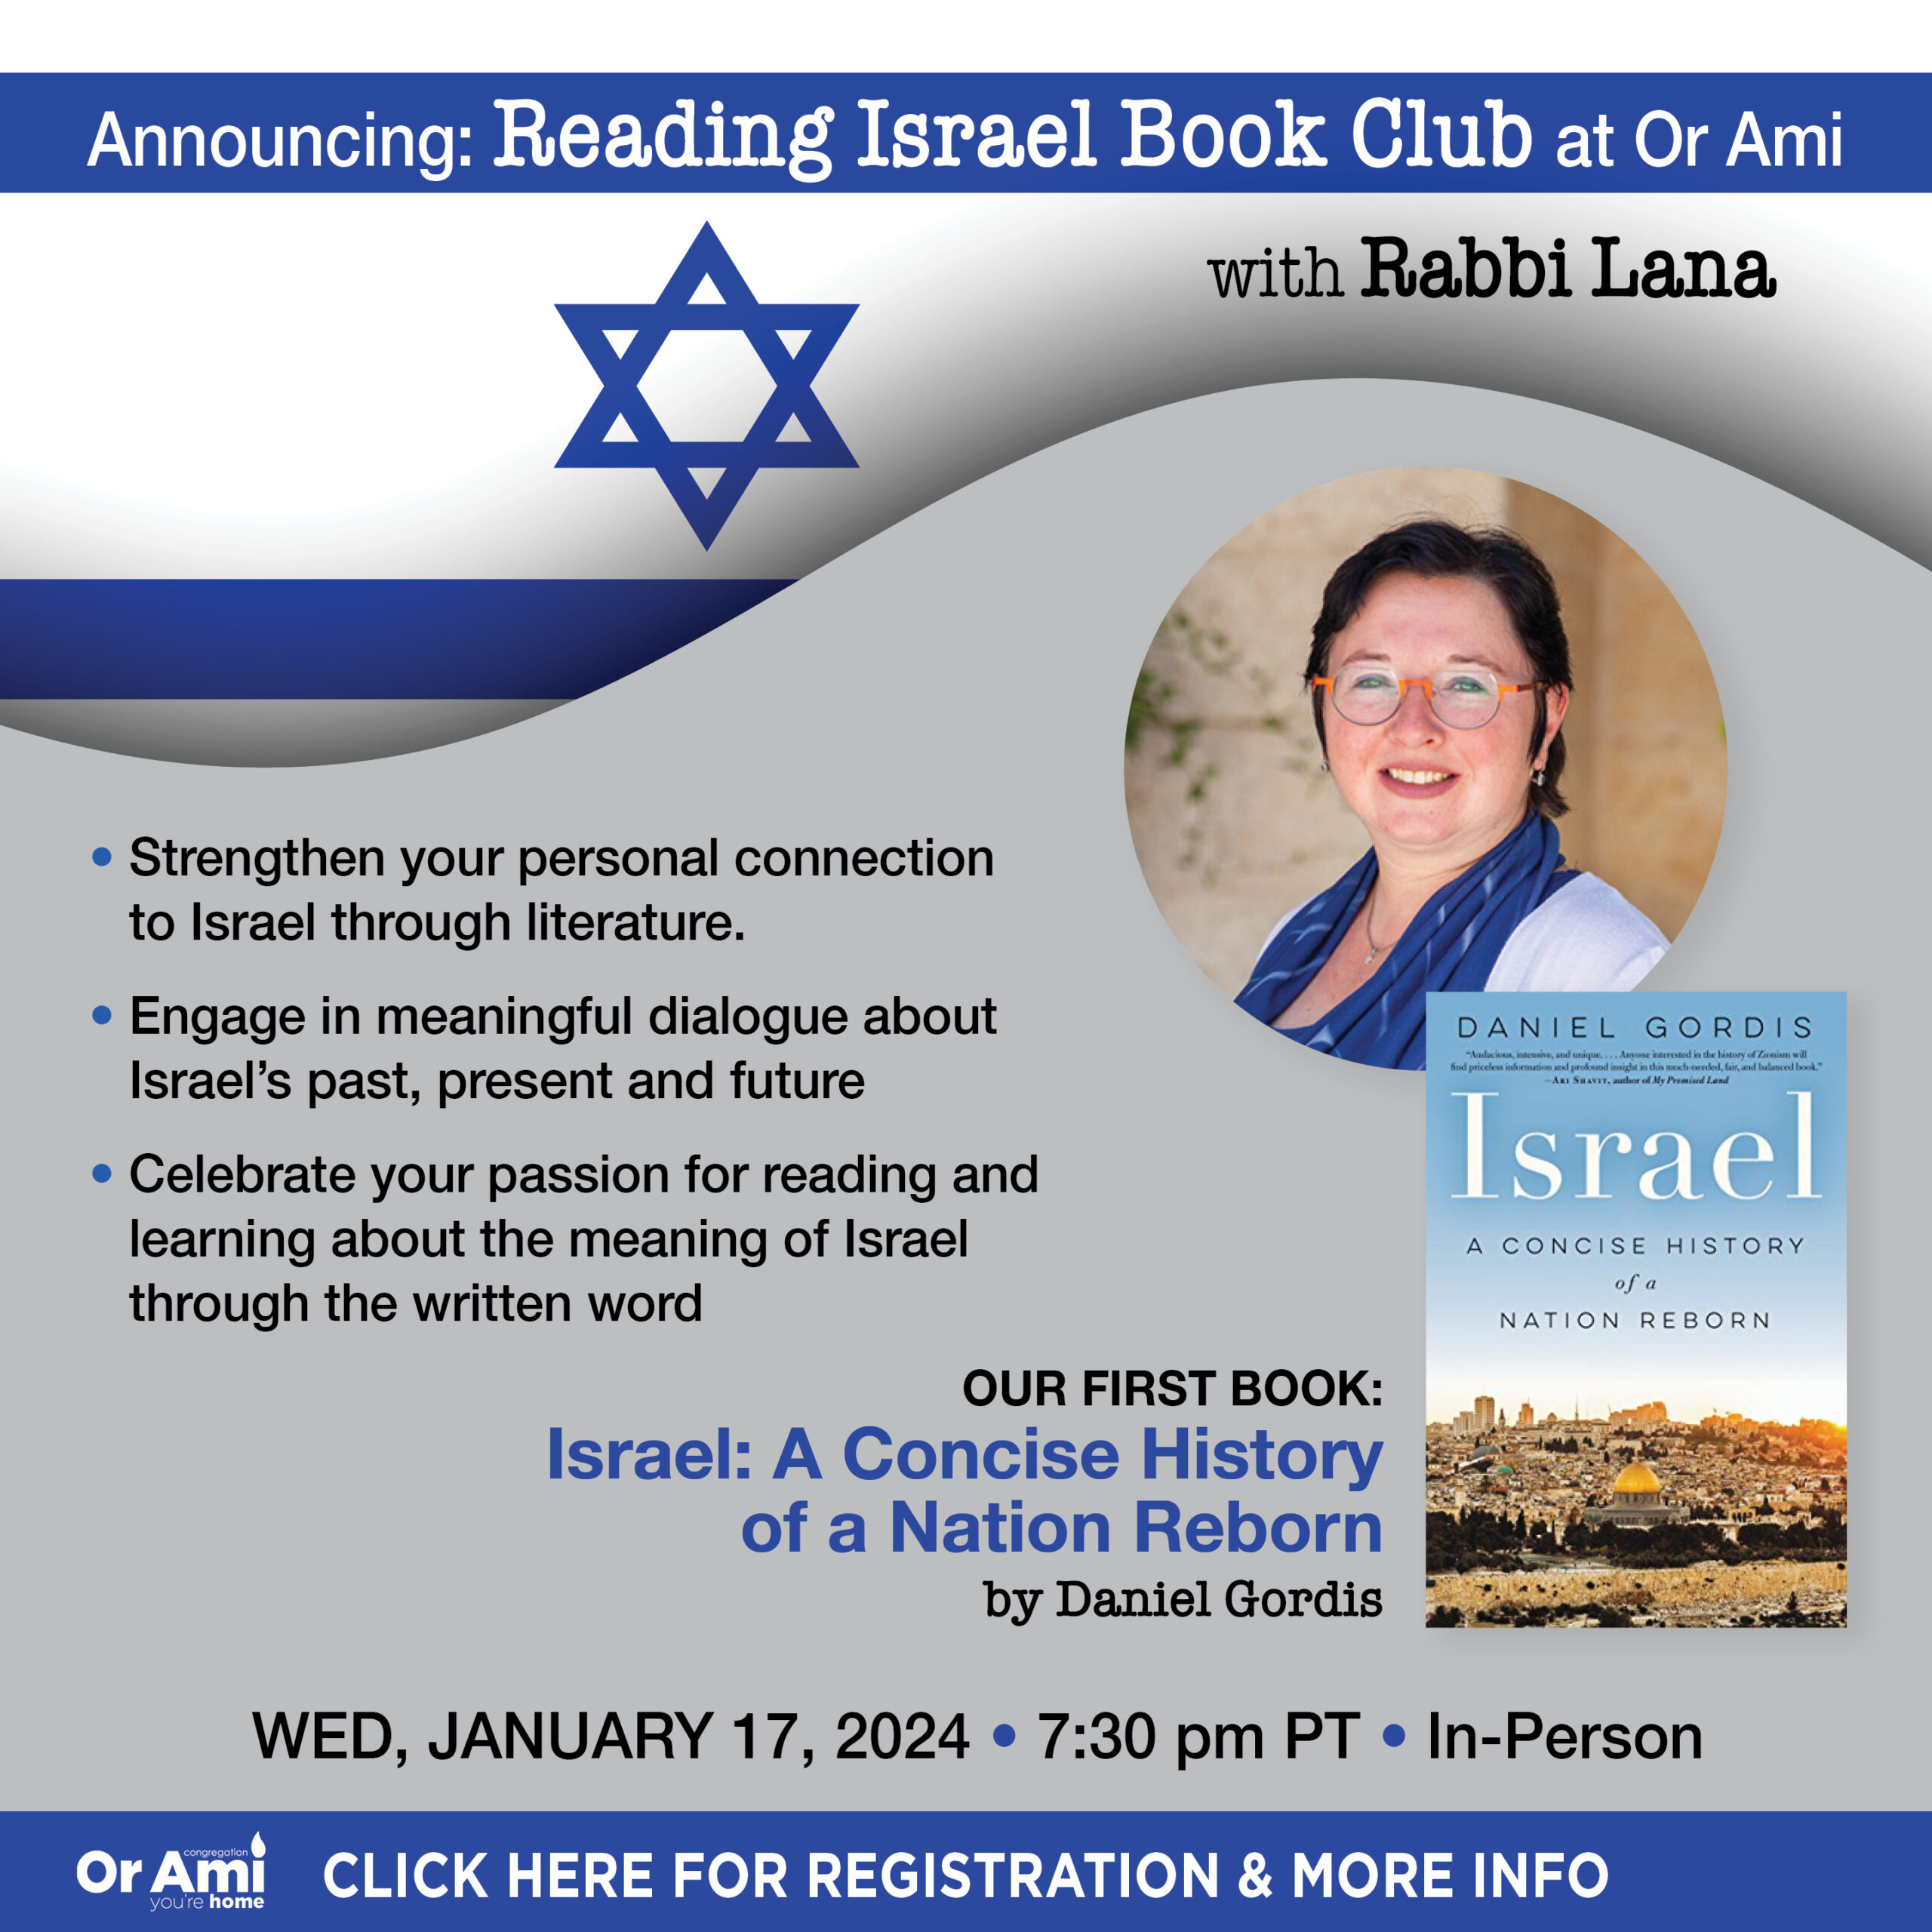 *Or Ami Reading Israel Book Club at Or Ami CLICK